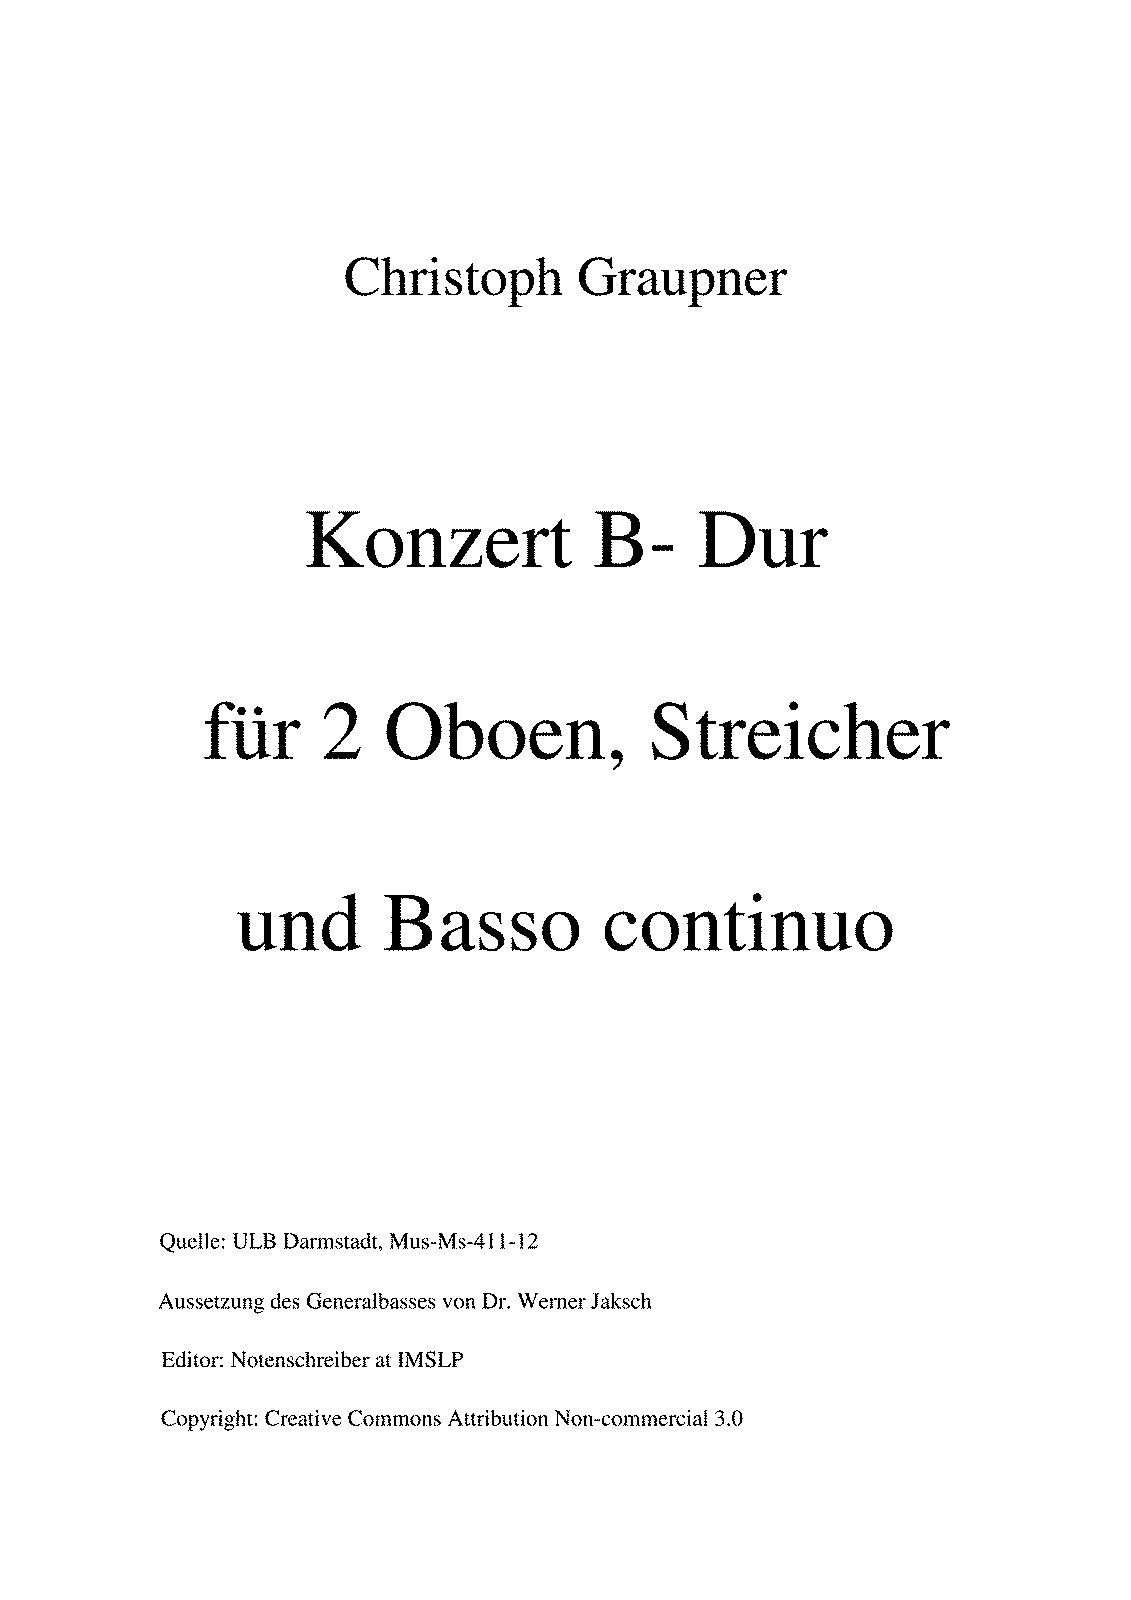 Concerto for 2 Oboes in B-flat major, GWV 341 (Graupner, Christoph) - IMSLP